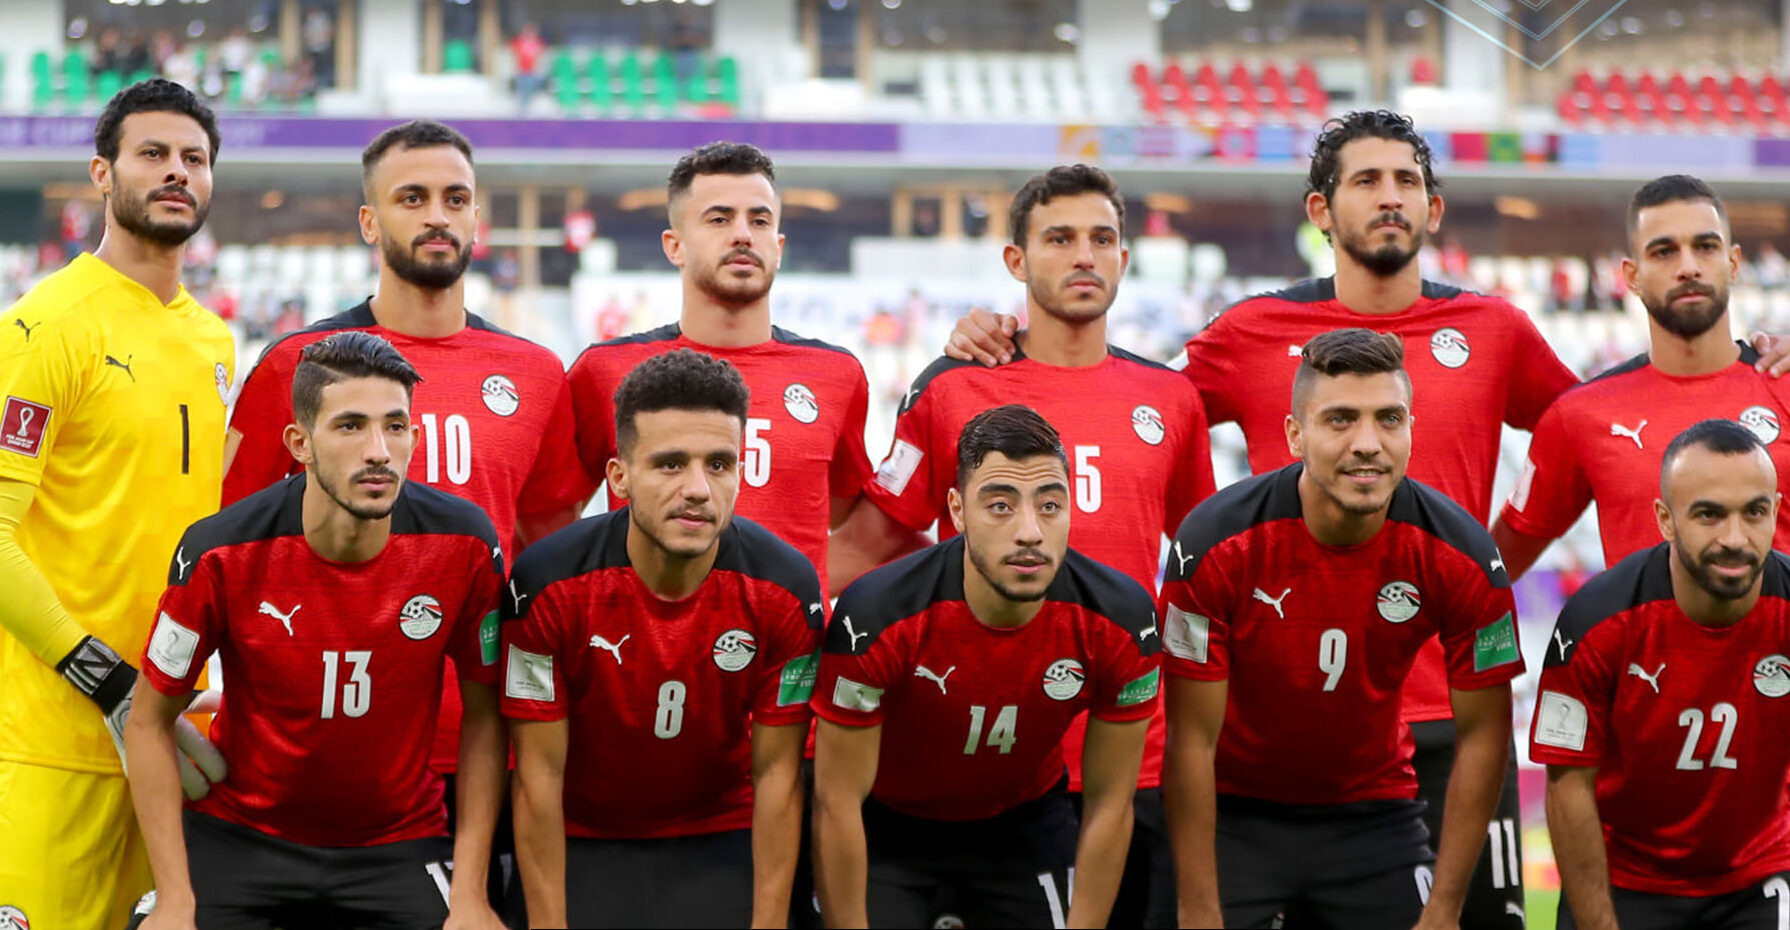 حكم أرجنتيني يدير مباراة مصر والجزائر بكأس العرب غدًا 1